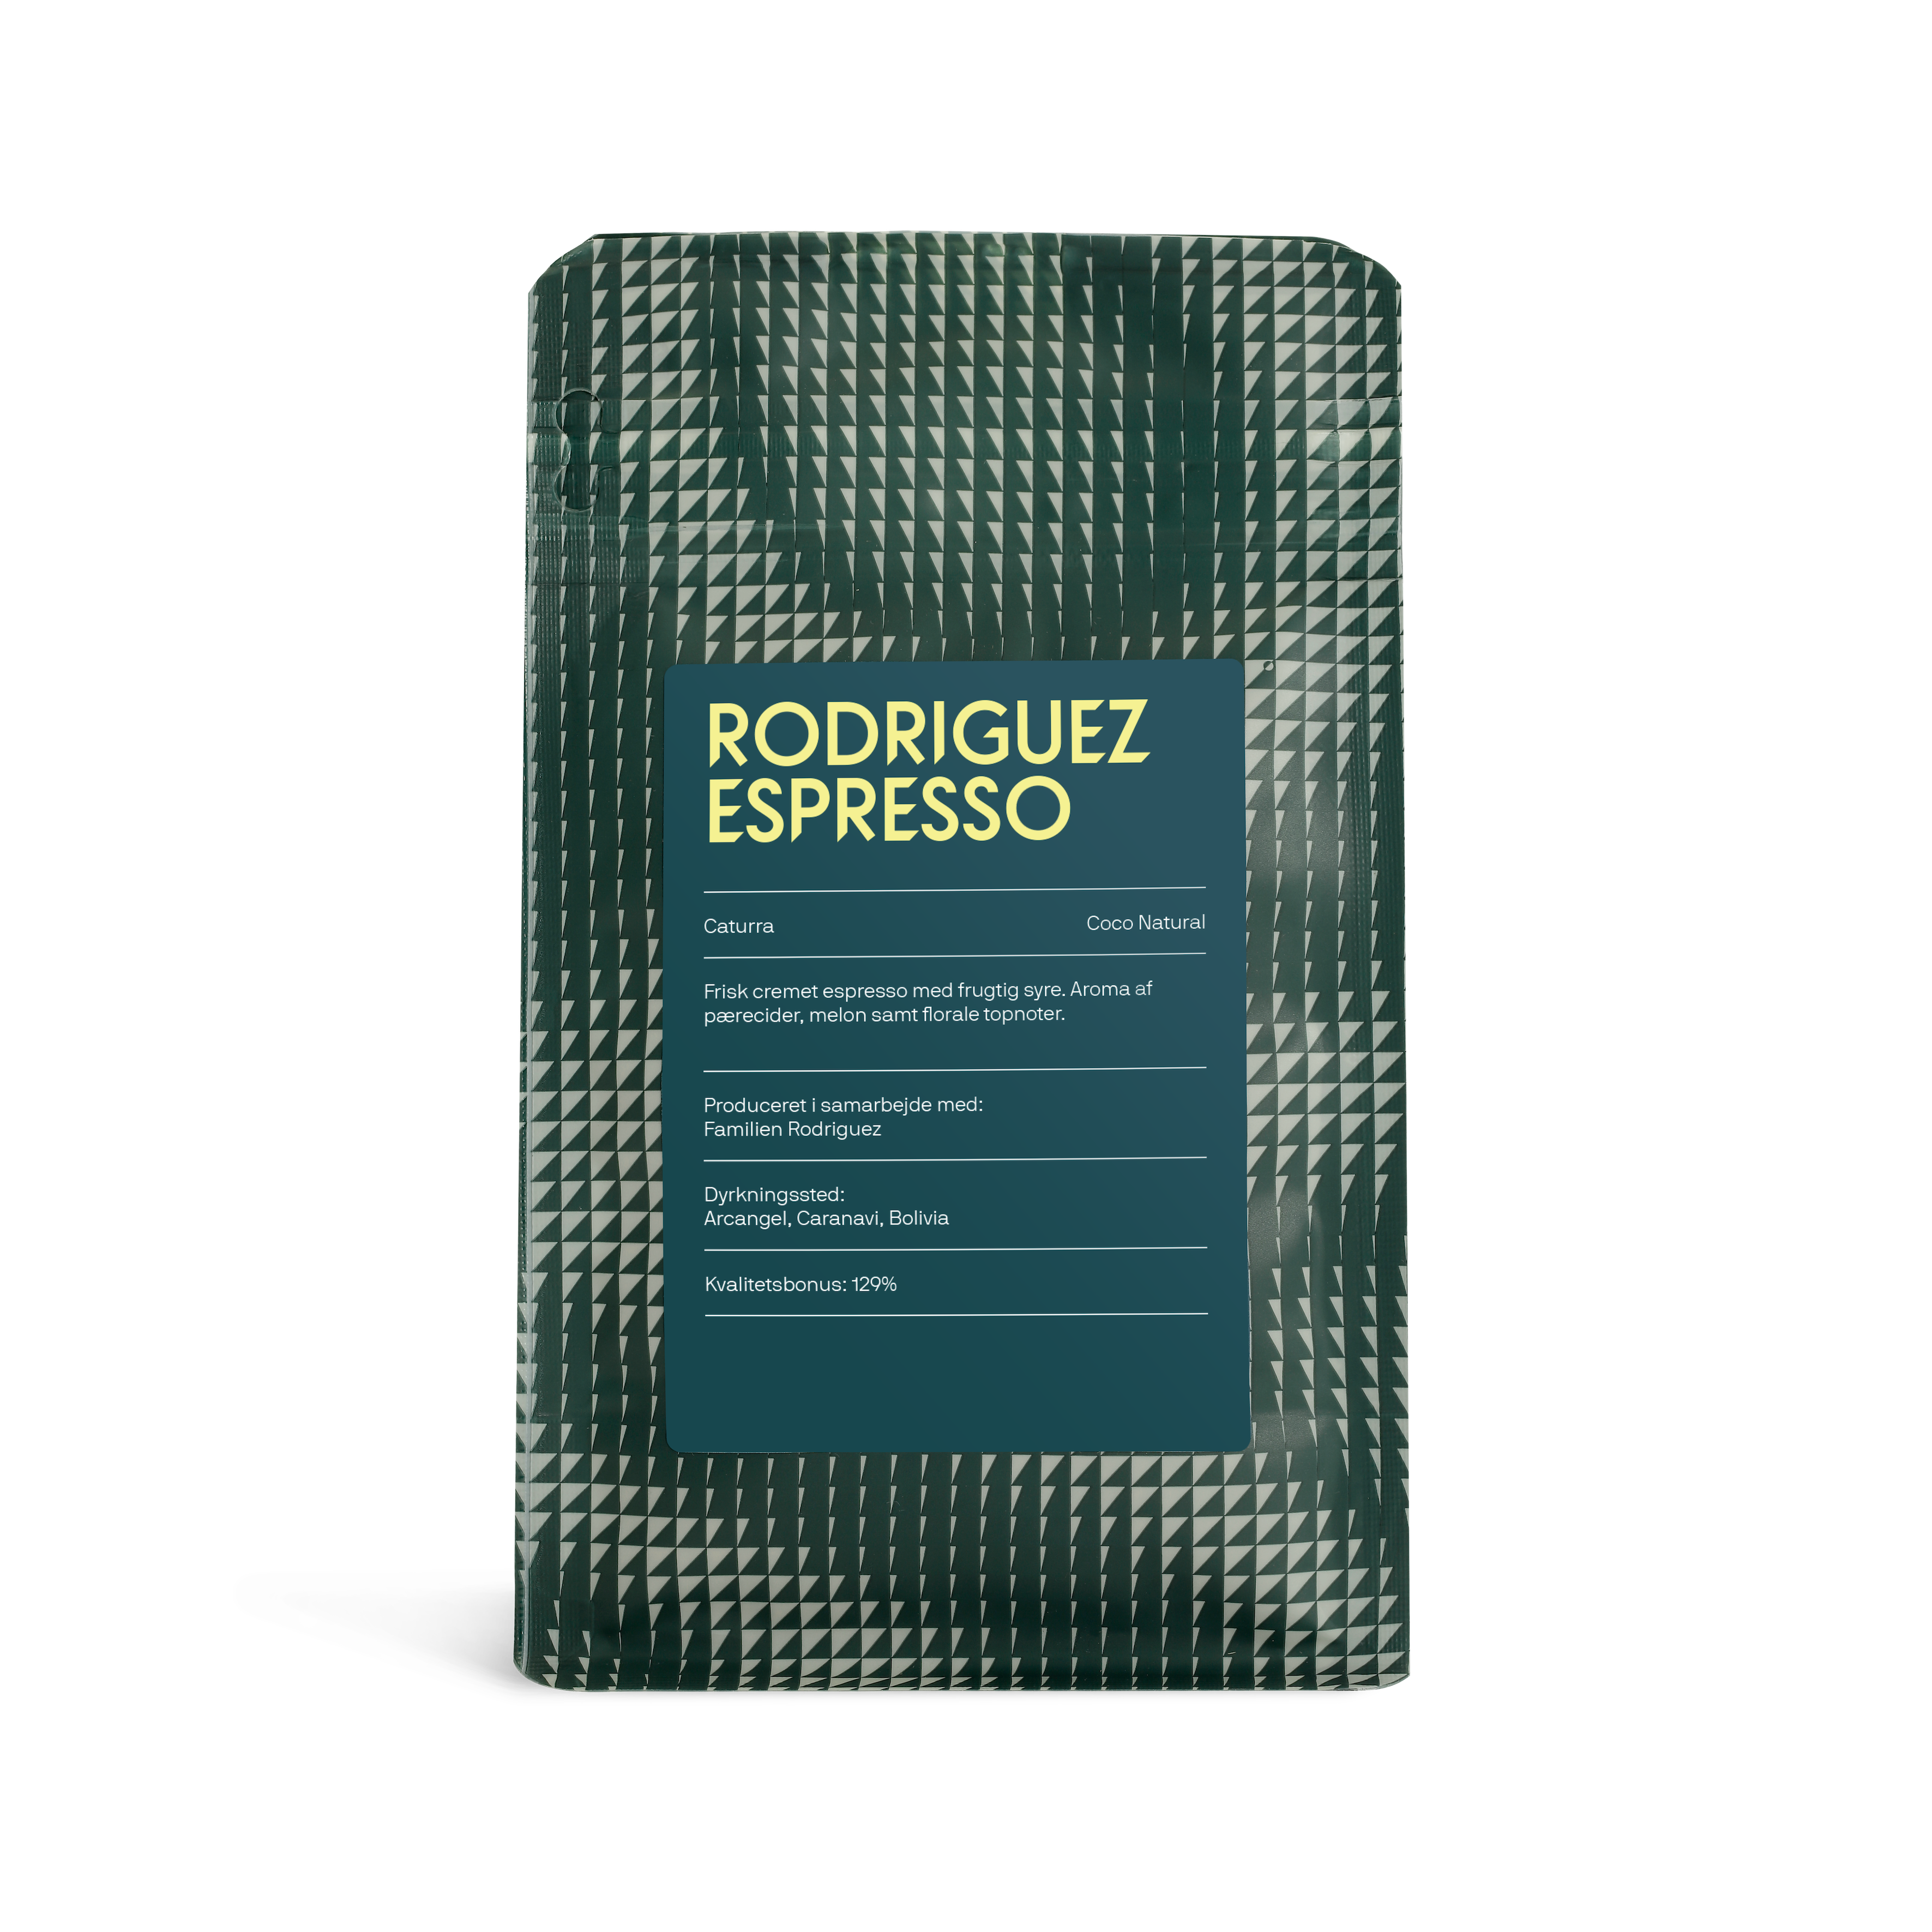 Rodriguez Espresso